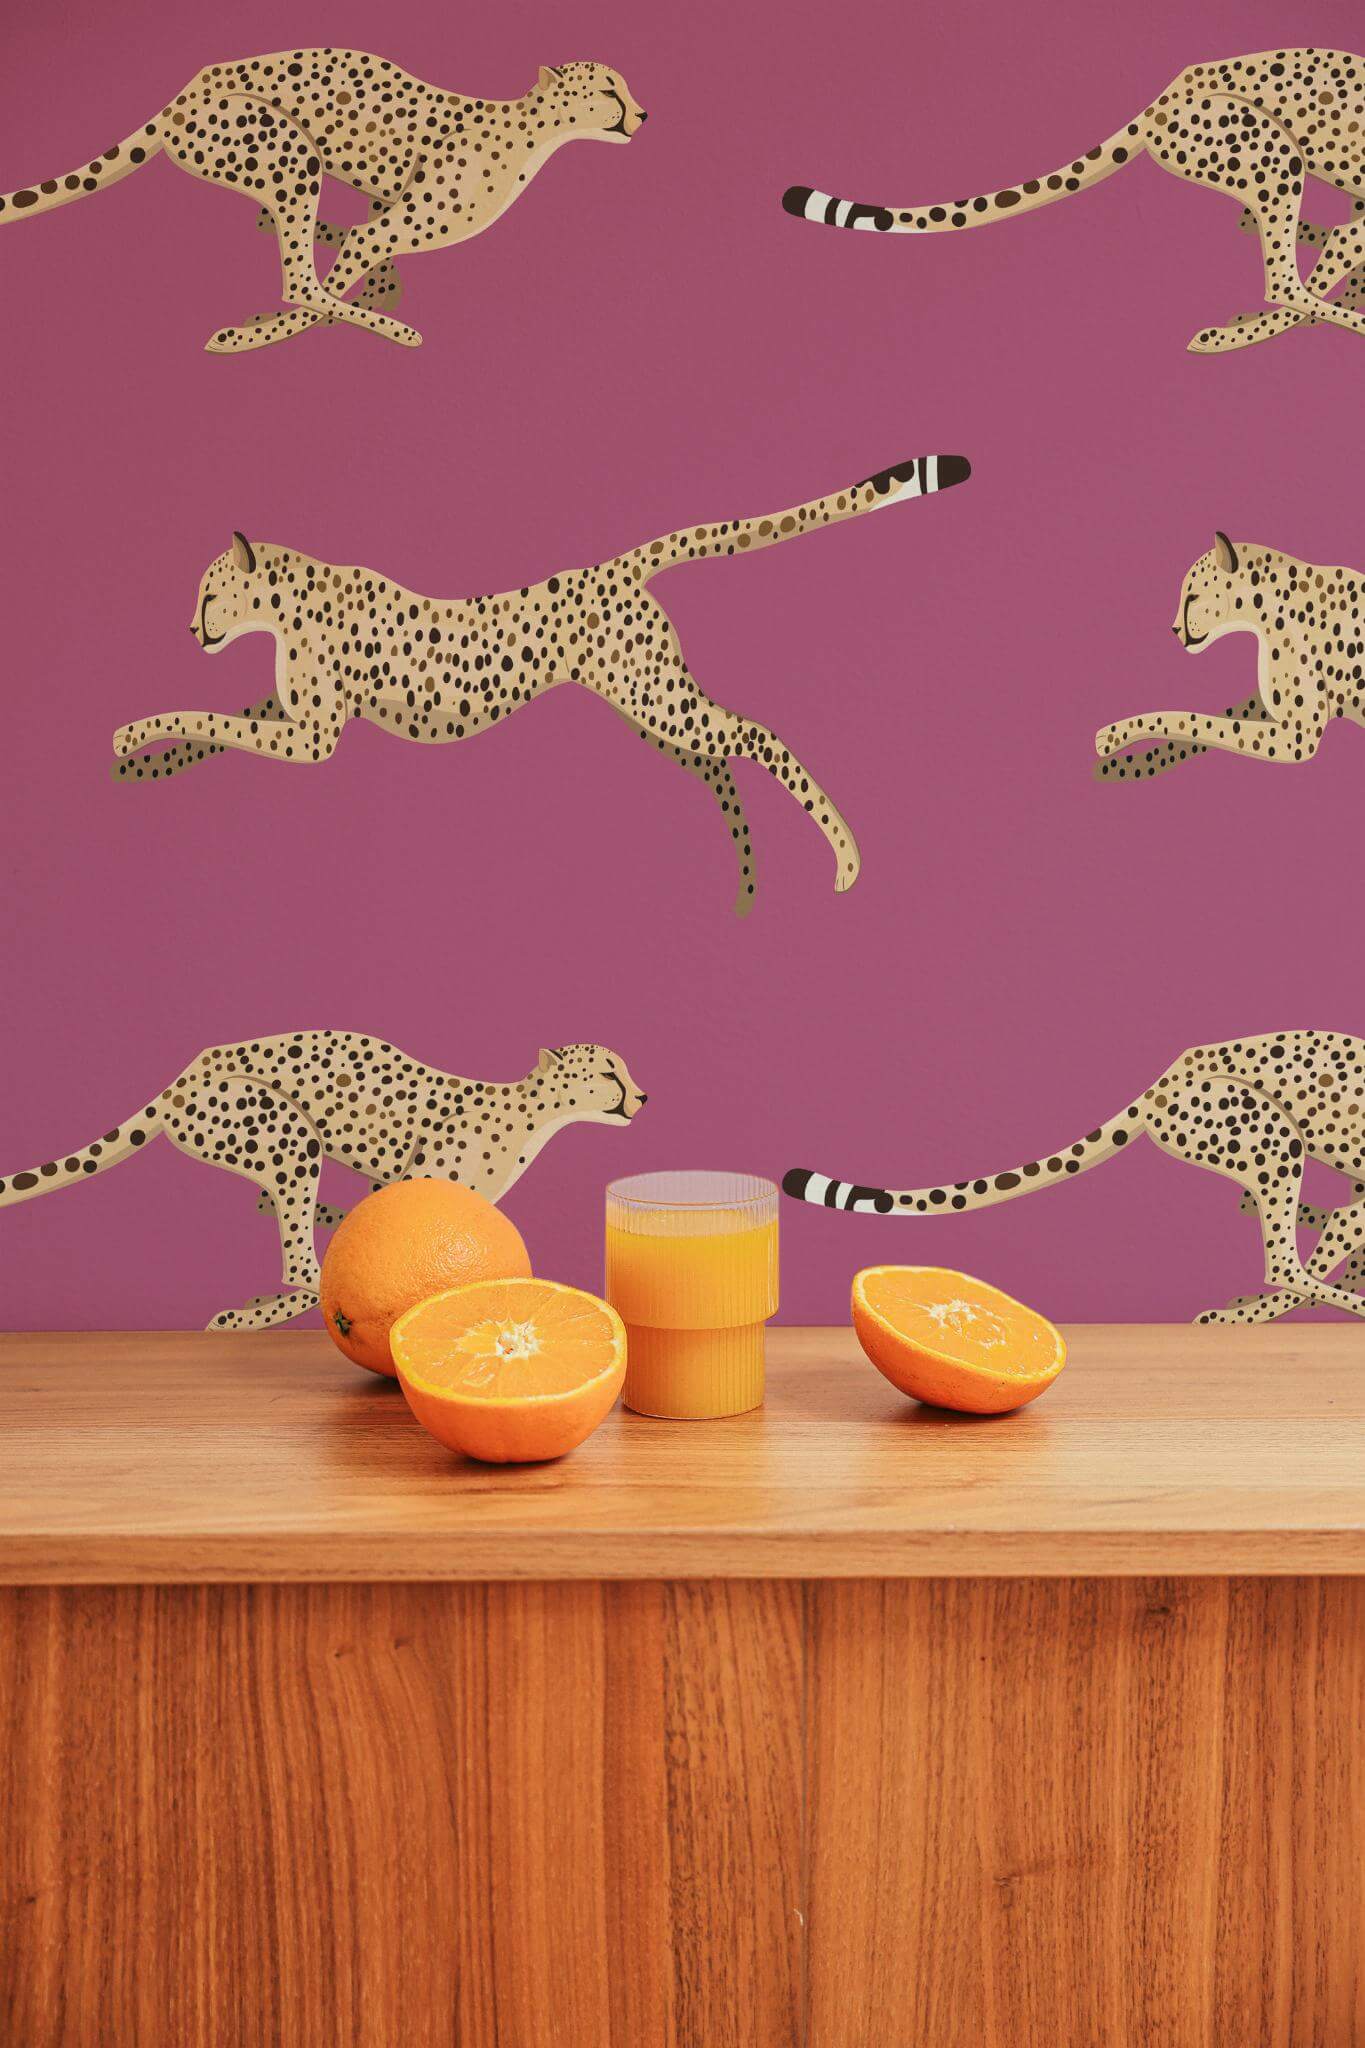 Cheetah wallpaper